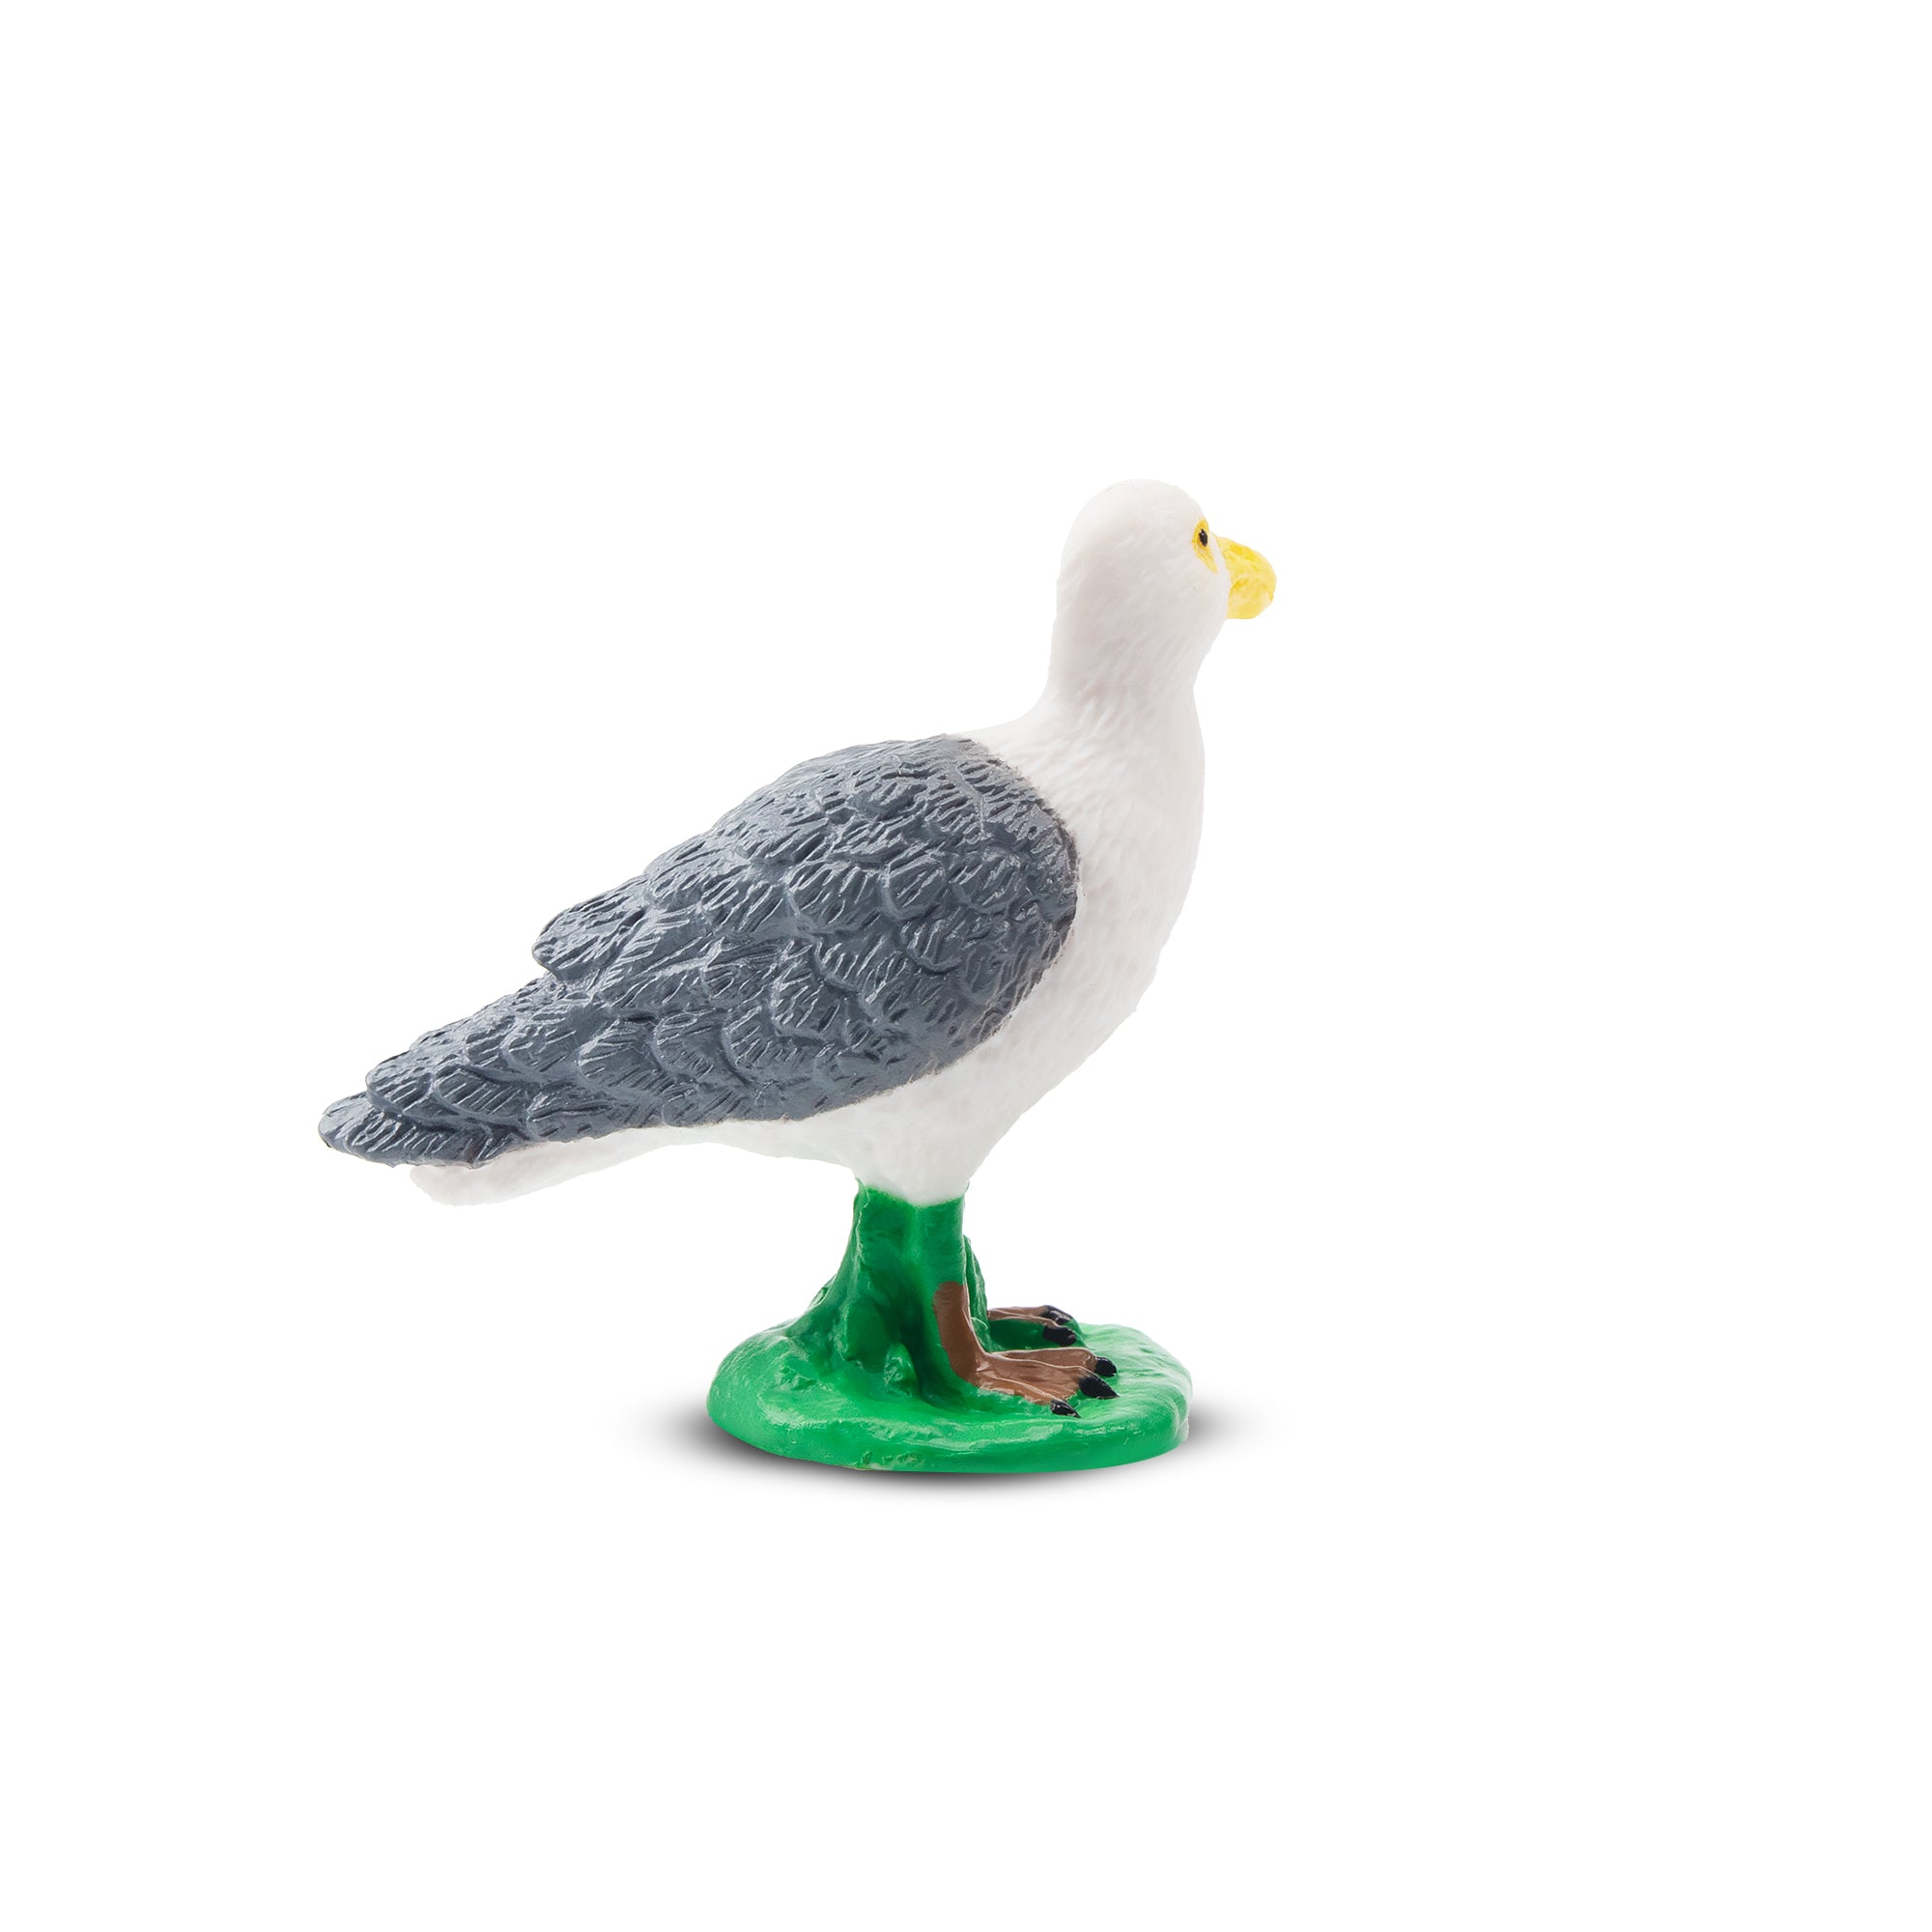 Toymany Glaucous Gull Figurine Toy-2